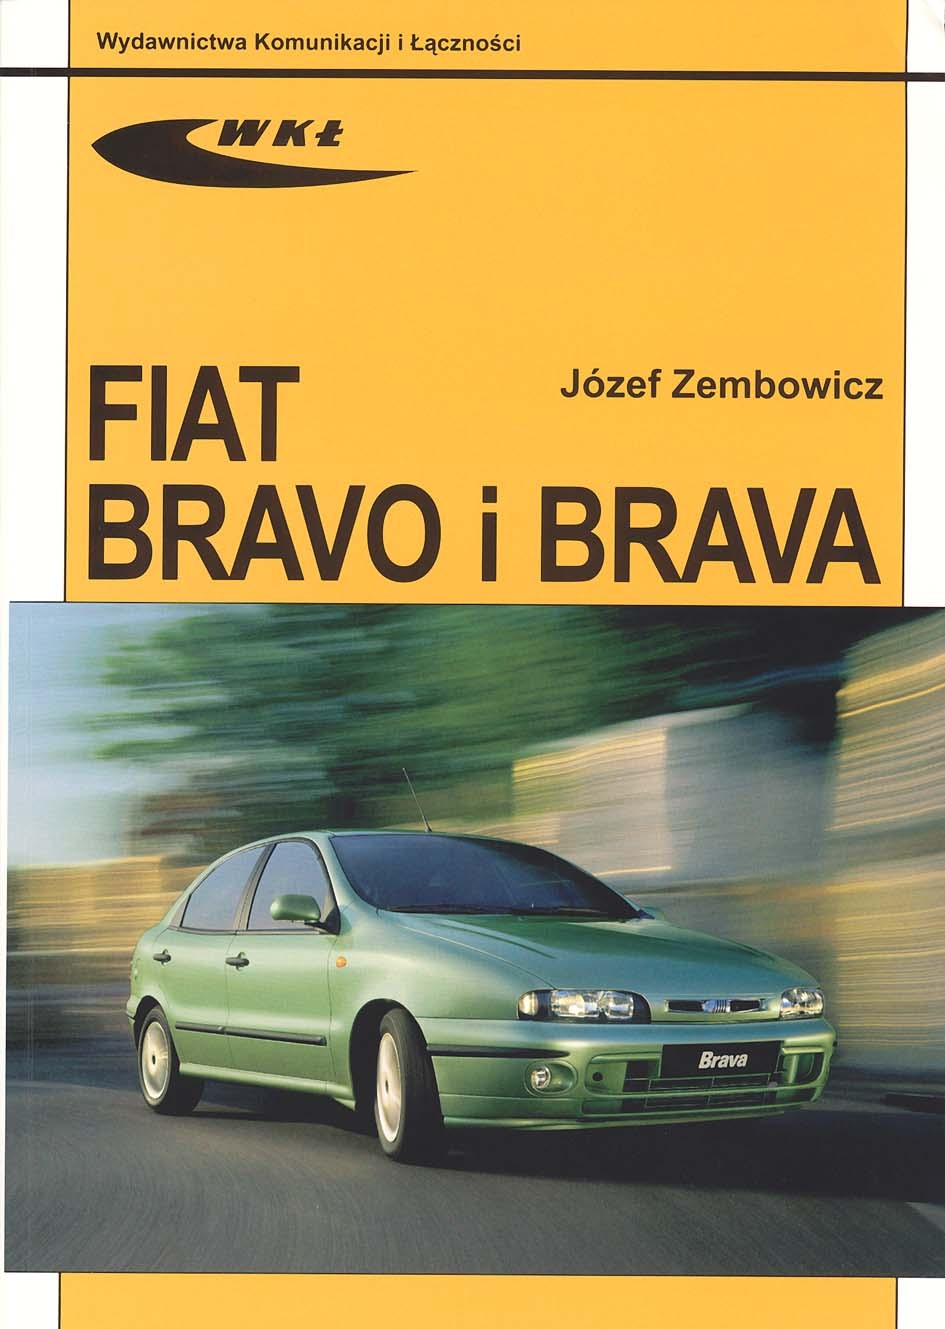 FIAT BRAVO I FIAT BRAVA (modele 19952002)